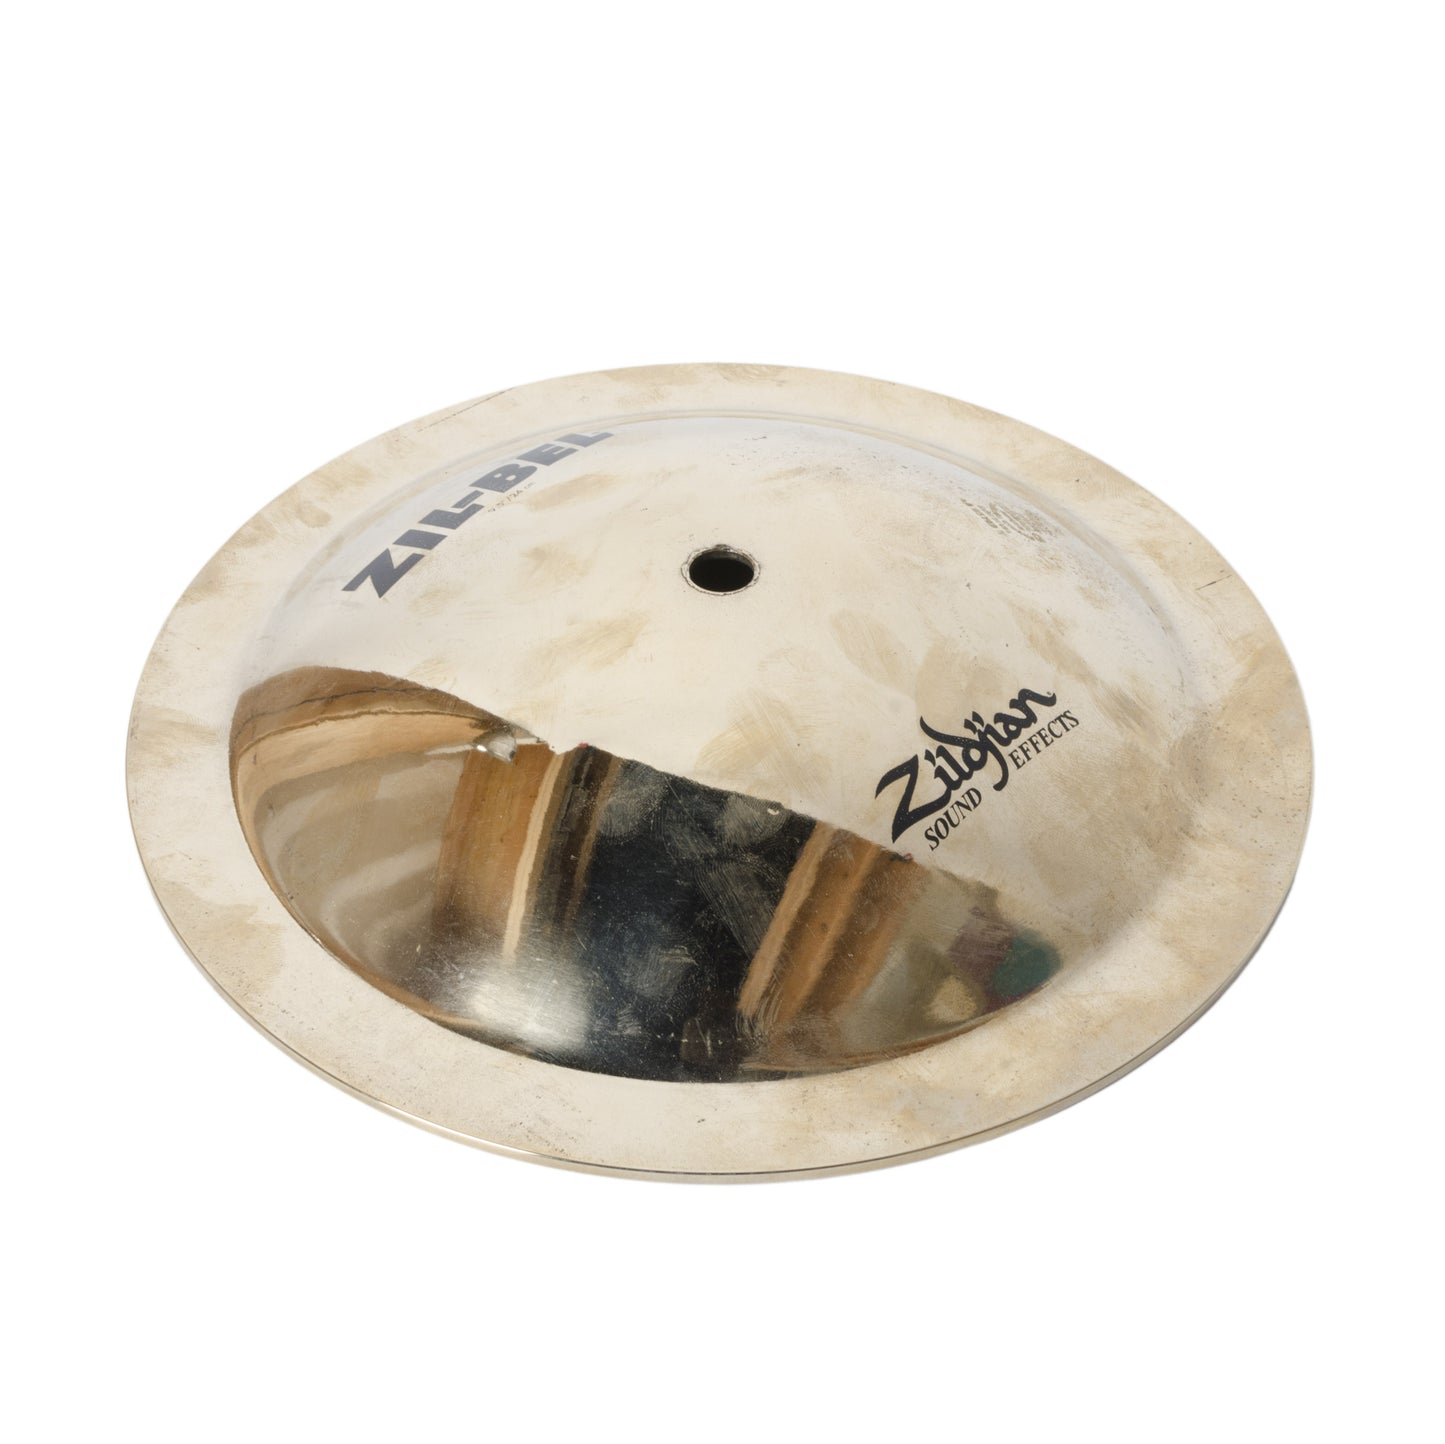 Zildjian 9.5” Large Zil Bel FX Cymbal